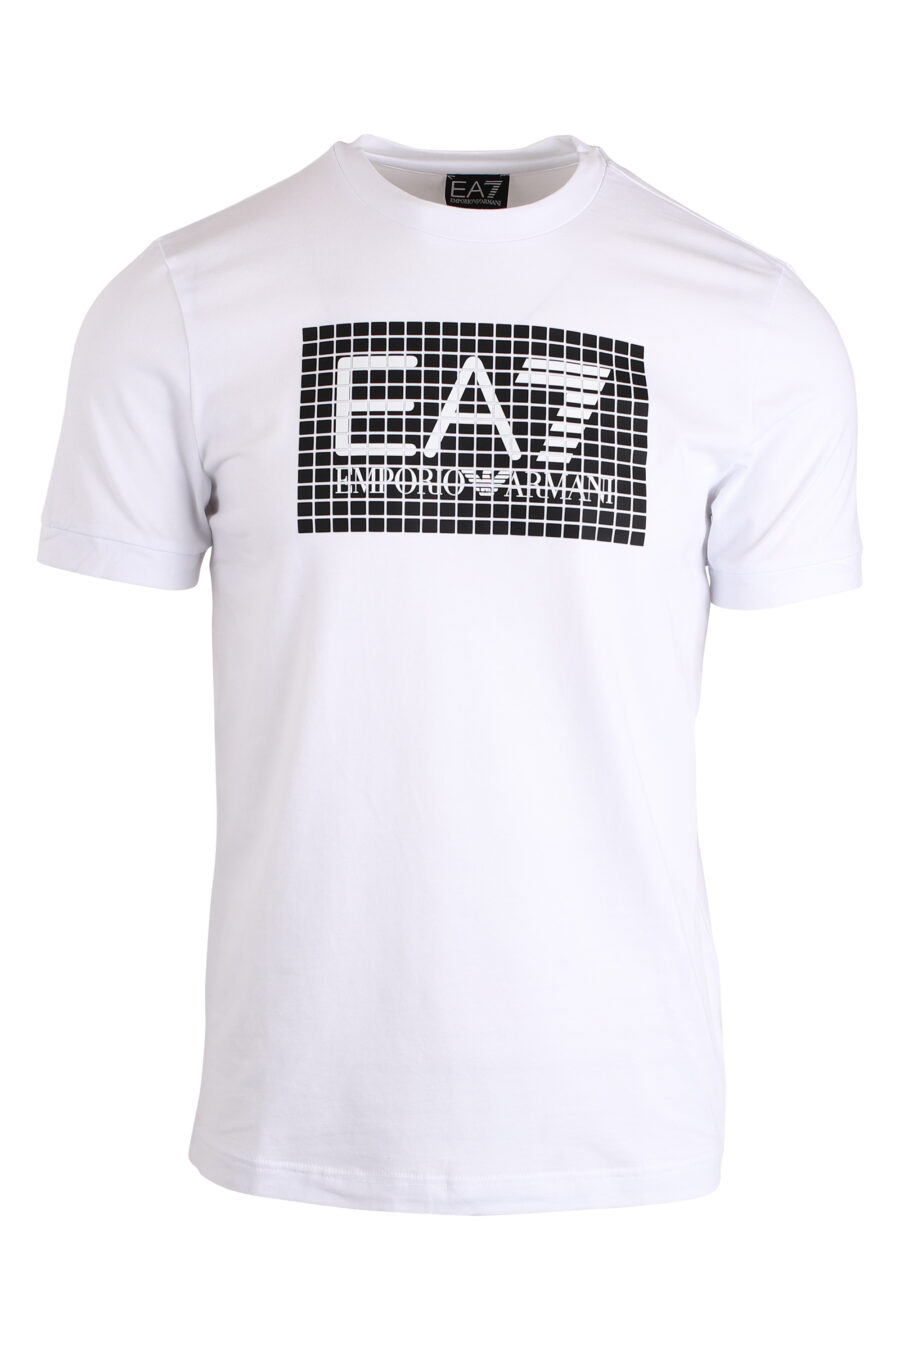 T-shirt blanc avec le logo "lux identity" en grille - IMG 4215